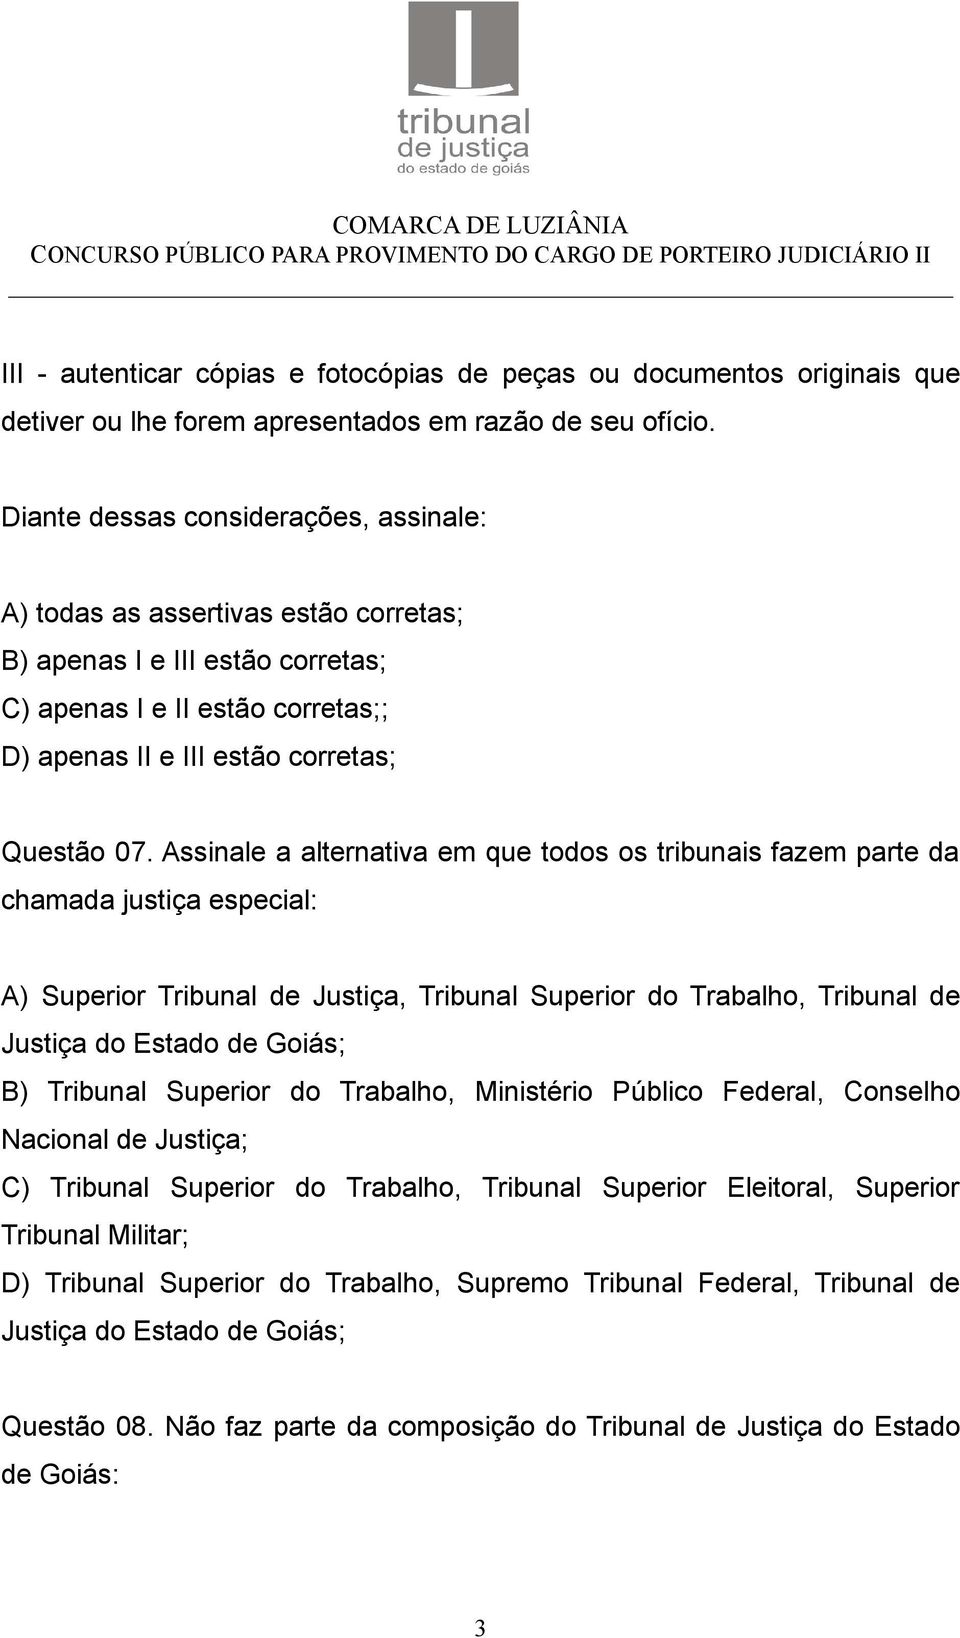 Assinale a alternativa em que todos os tribunais fazem parte da chamada justiça especial: A) Superior Tribunal de Justiça, Tribunal Superior do Trabalho, Tribunal de Justiça do Estado de Goiás; B)